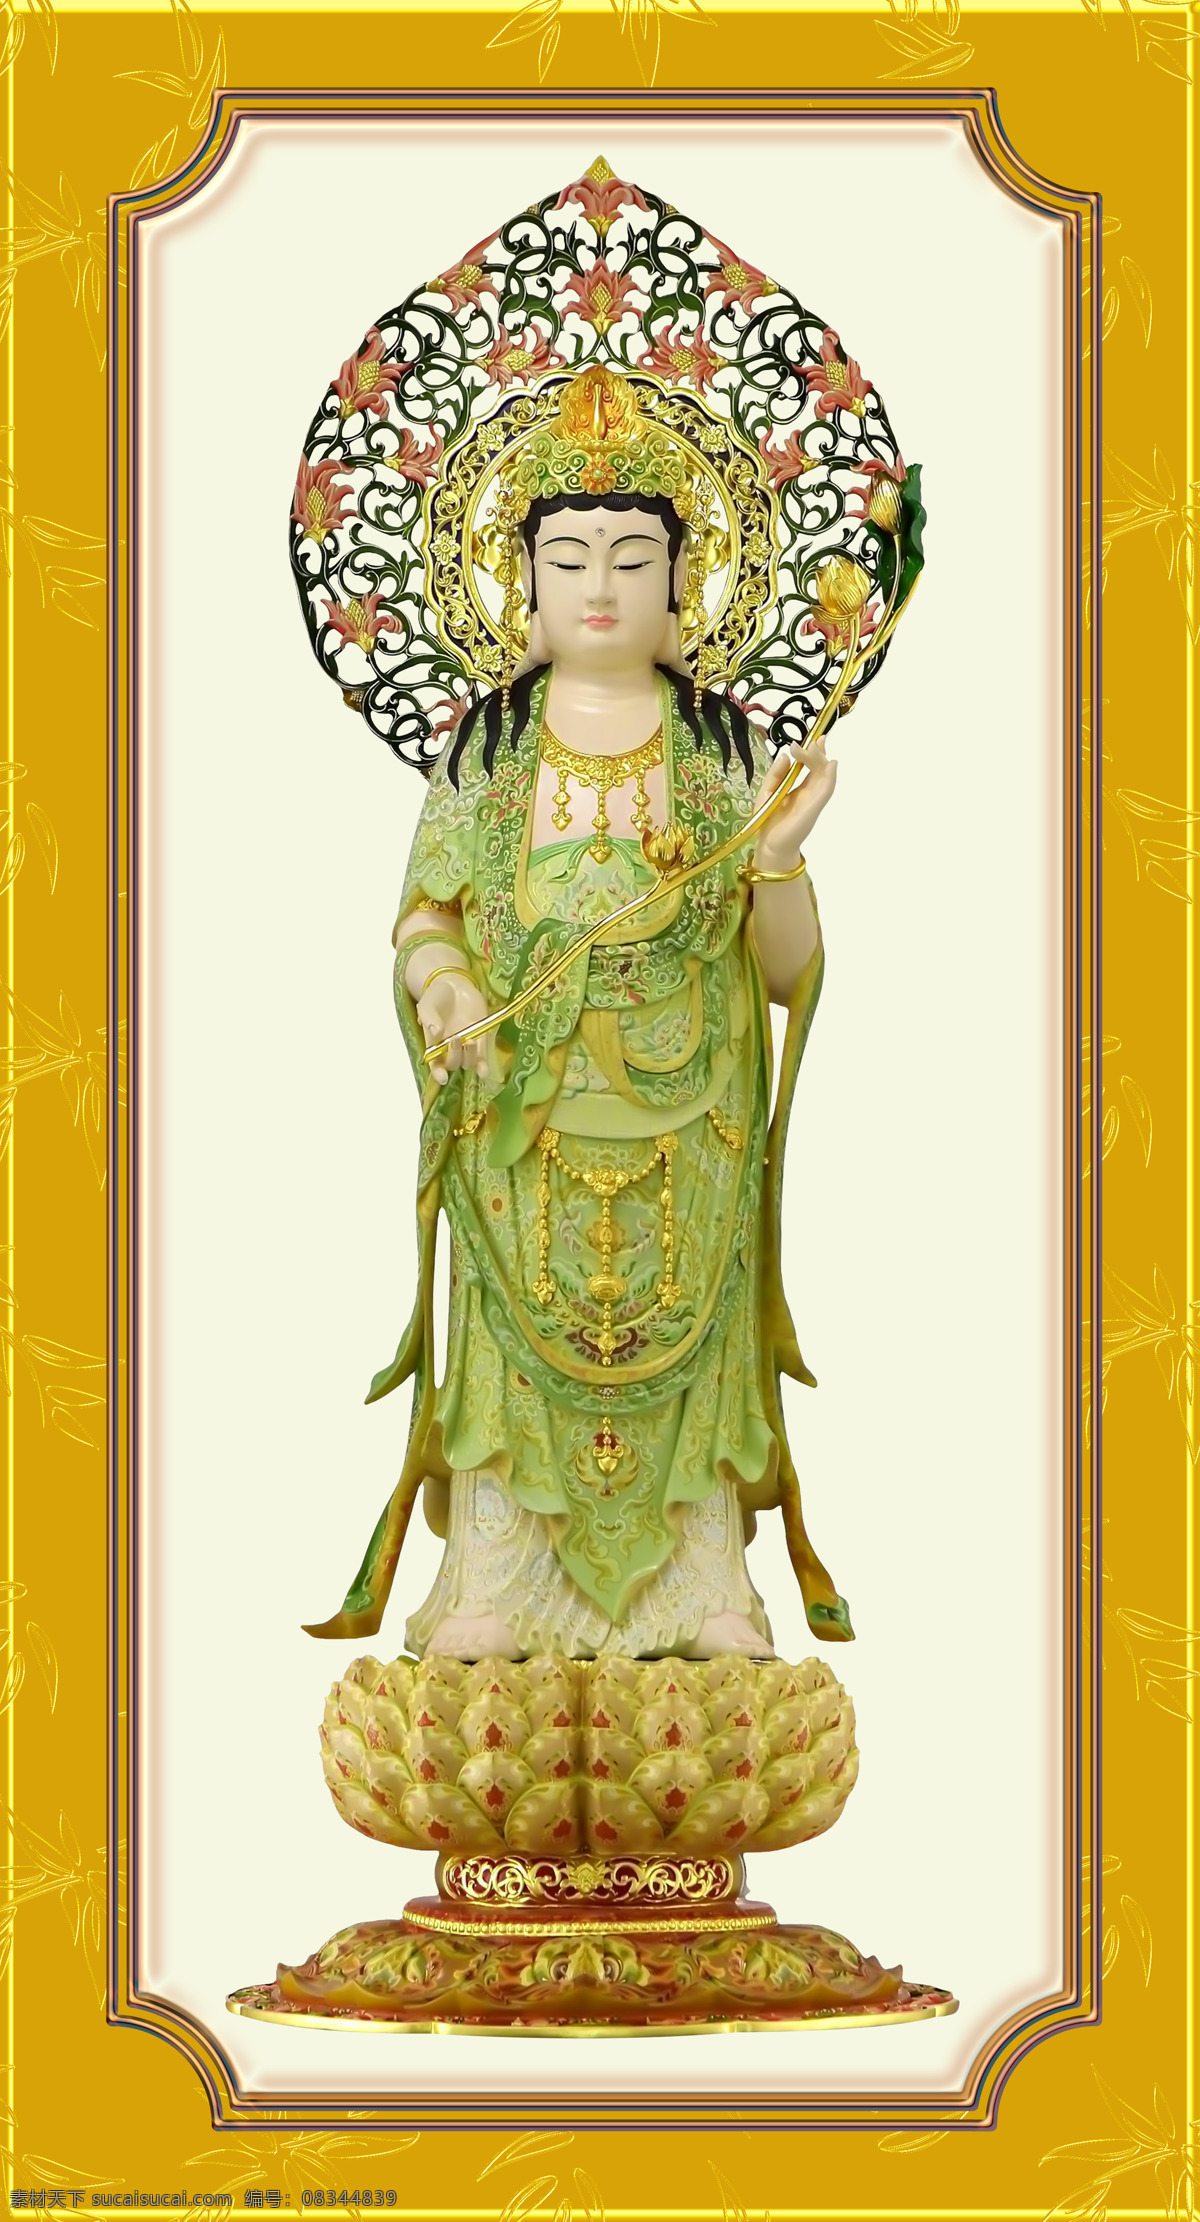 大势 菩萨 背光 边框 佛教 佛像 文化艺术 宗教信仰 设计素材 模板下载 大势至菩萨